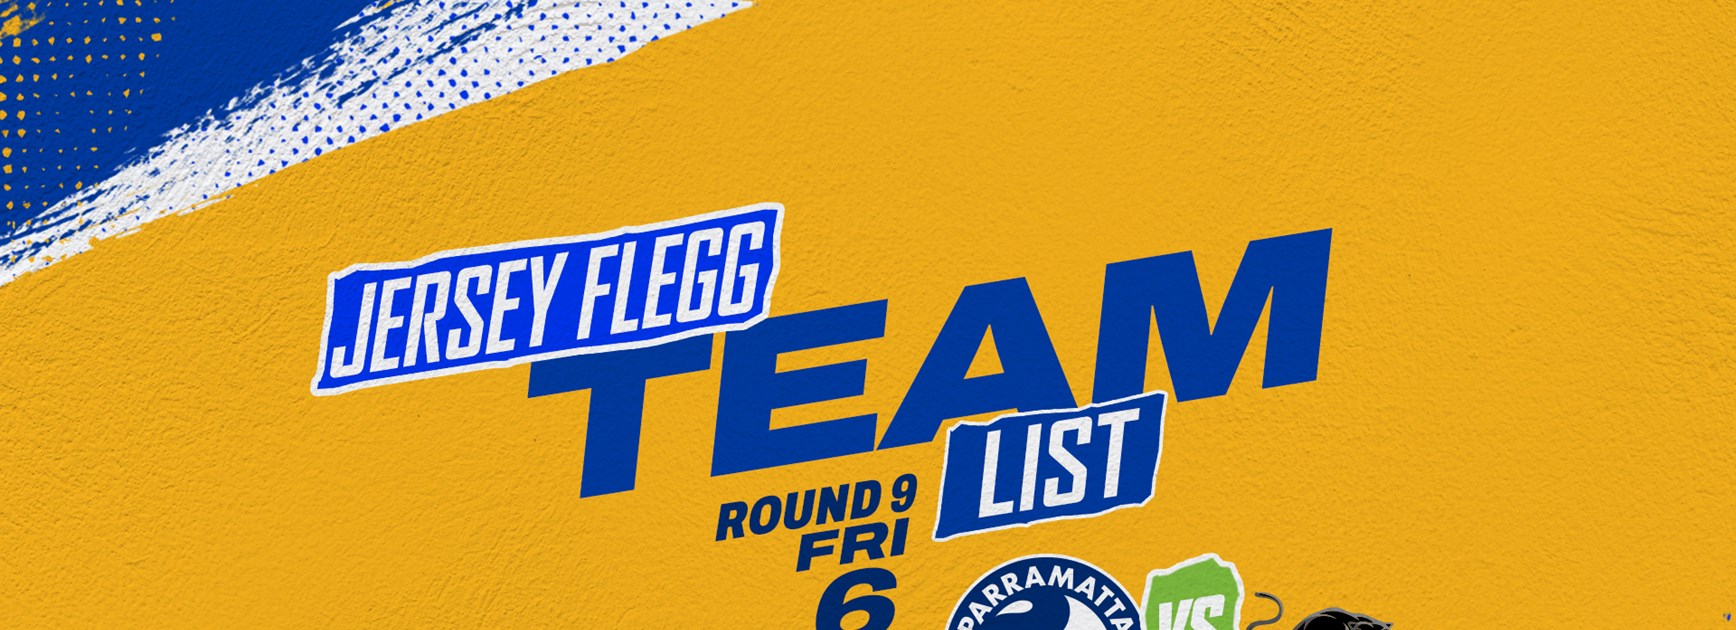 Jersey Flegg Team List - Panthers v Eels, Round Nine